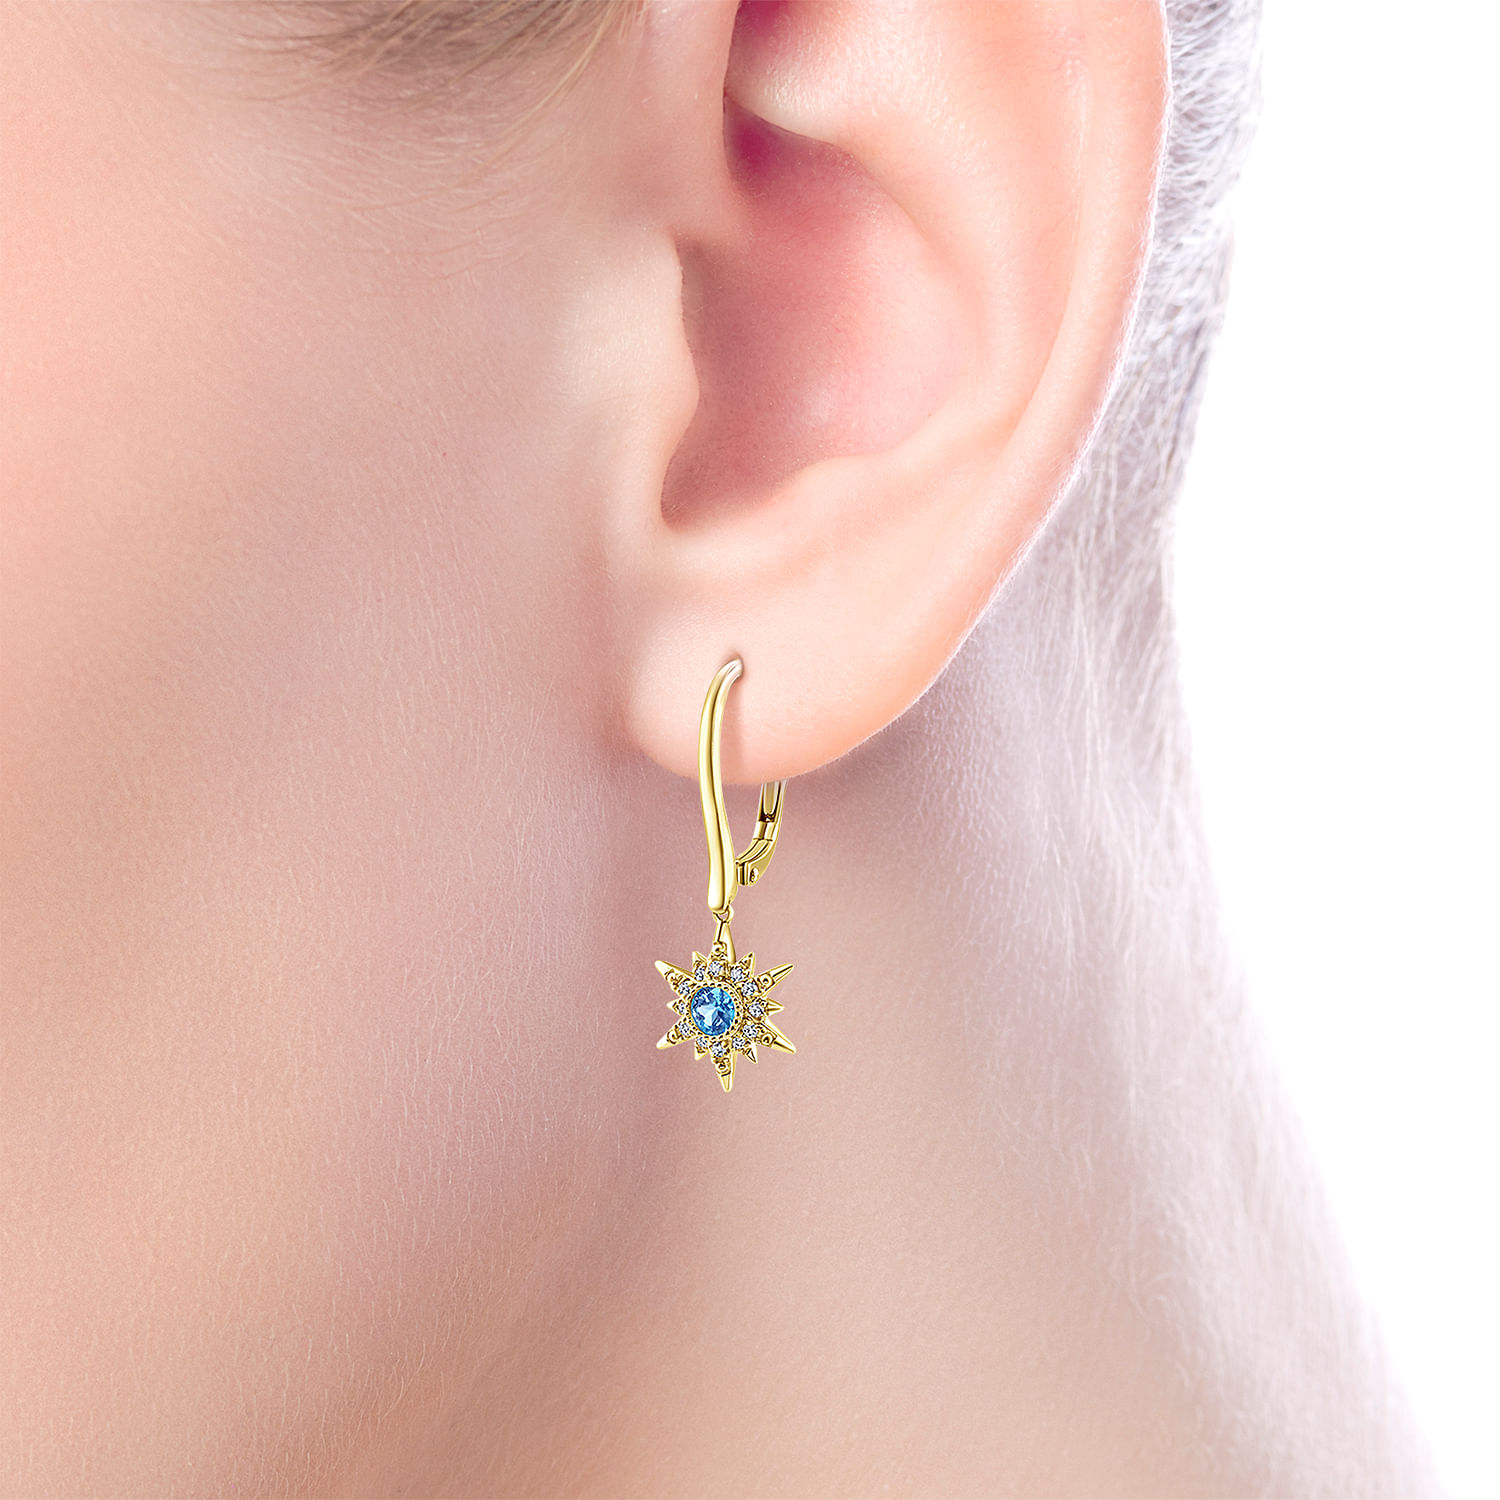 14K Yellow Gold Diamond Starburst Swiss Blue Topaz Drop Earrings